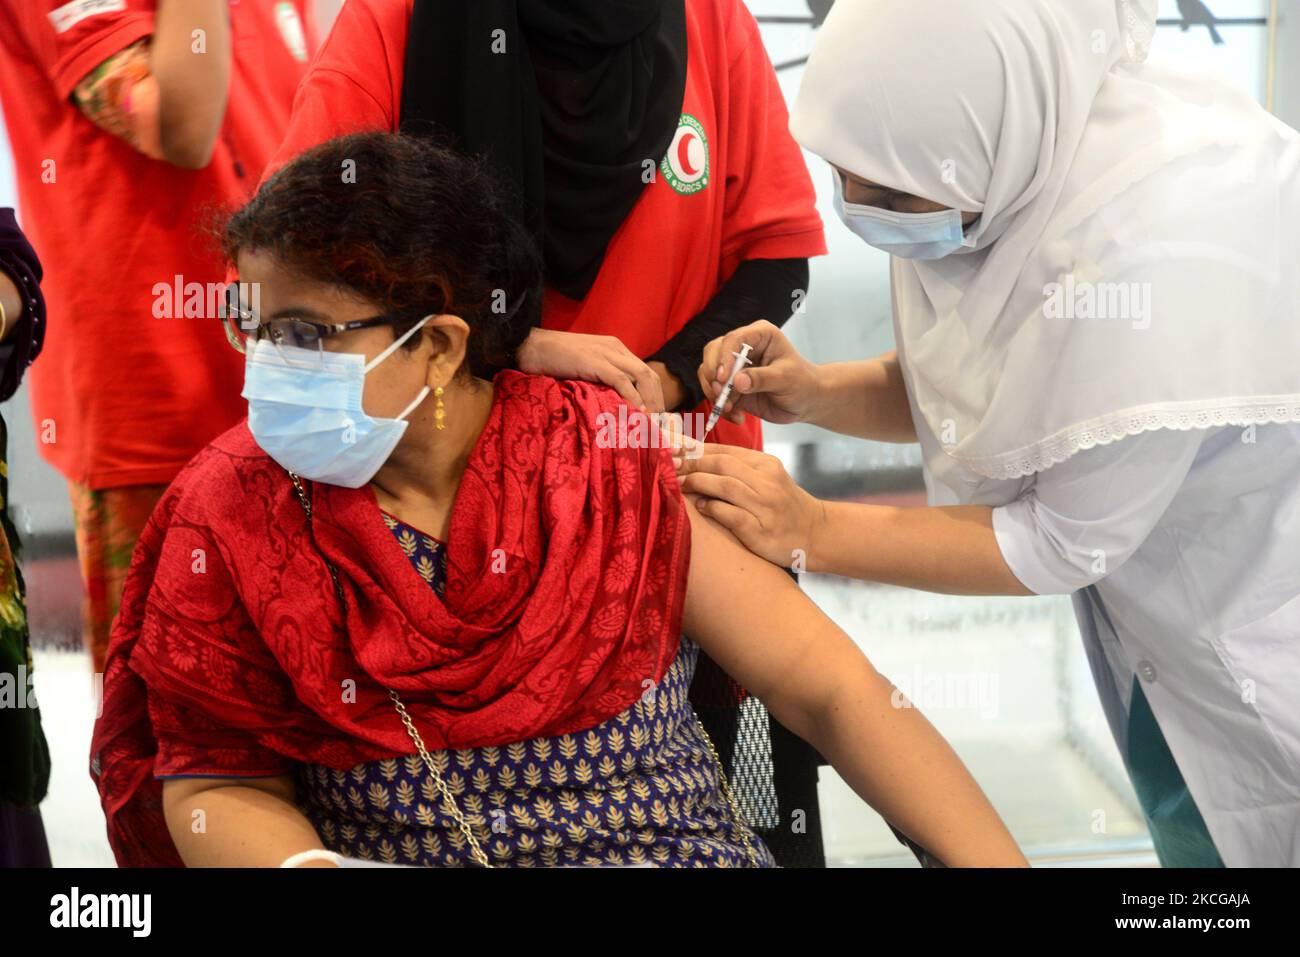 Une femme reçoit une première dose du vaccin contre le coronavirus Pfizer-BioNTech Covid-19 au cours d'une campagne de vaccination à l'Université médicale de Bangabandhu Sheikh Mujib (BSMMU) à Dhaka, au Bangladesh, au 21 juin 2021. Selon les autorités sanitaires du Bangladesh qui administrent le vaccin Pfizer-BioNTech Covid-19, ont commencé dans trois hôpitaux de Dhaka. (Photo par Mamunur Rashid/NurPhoto) Banque D'Images